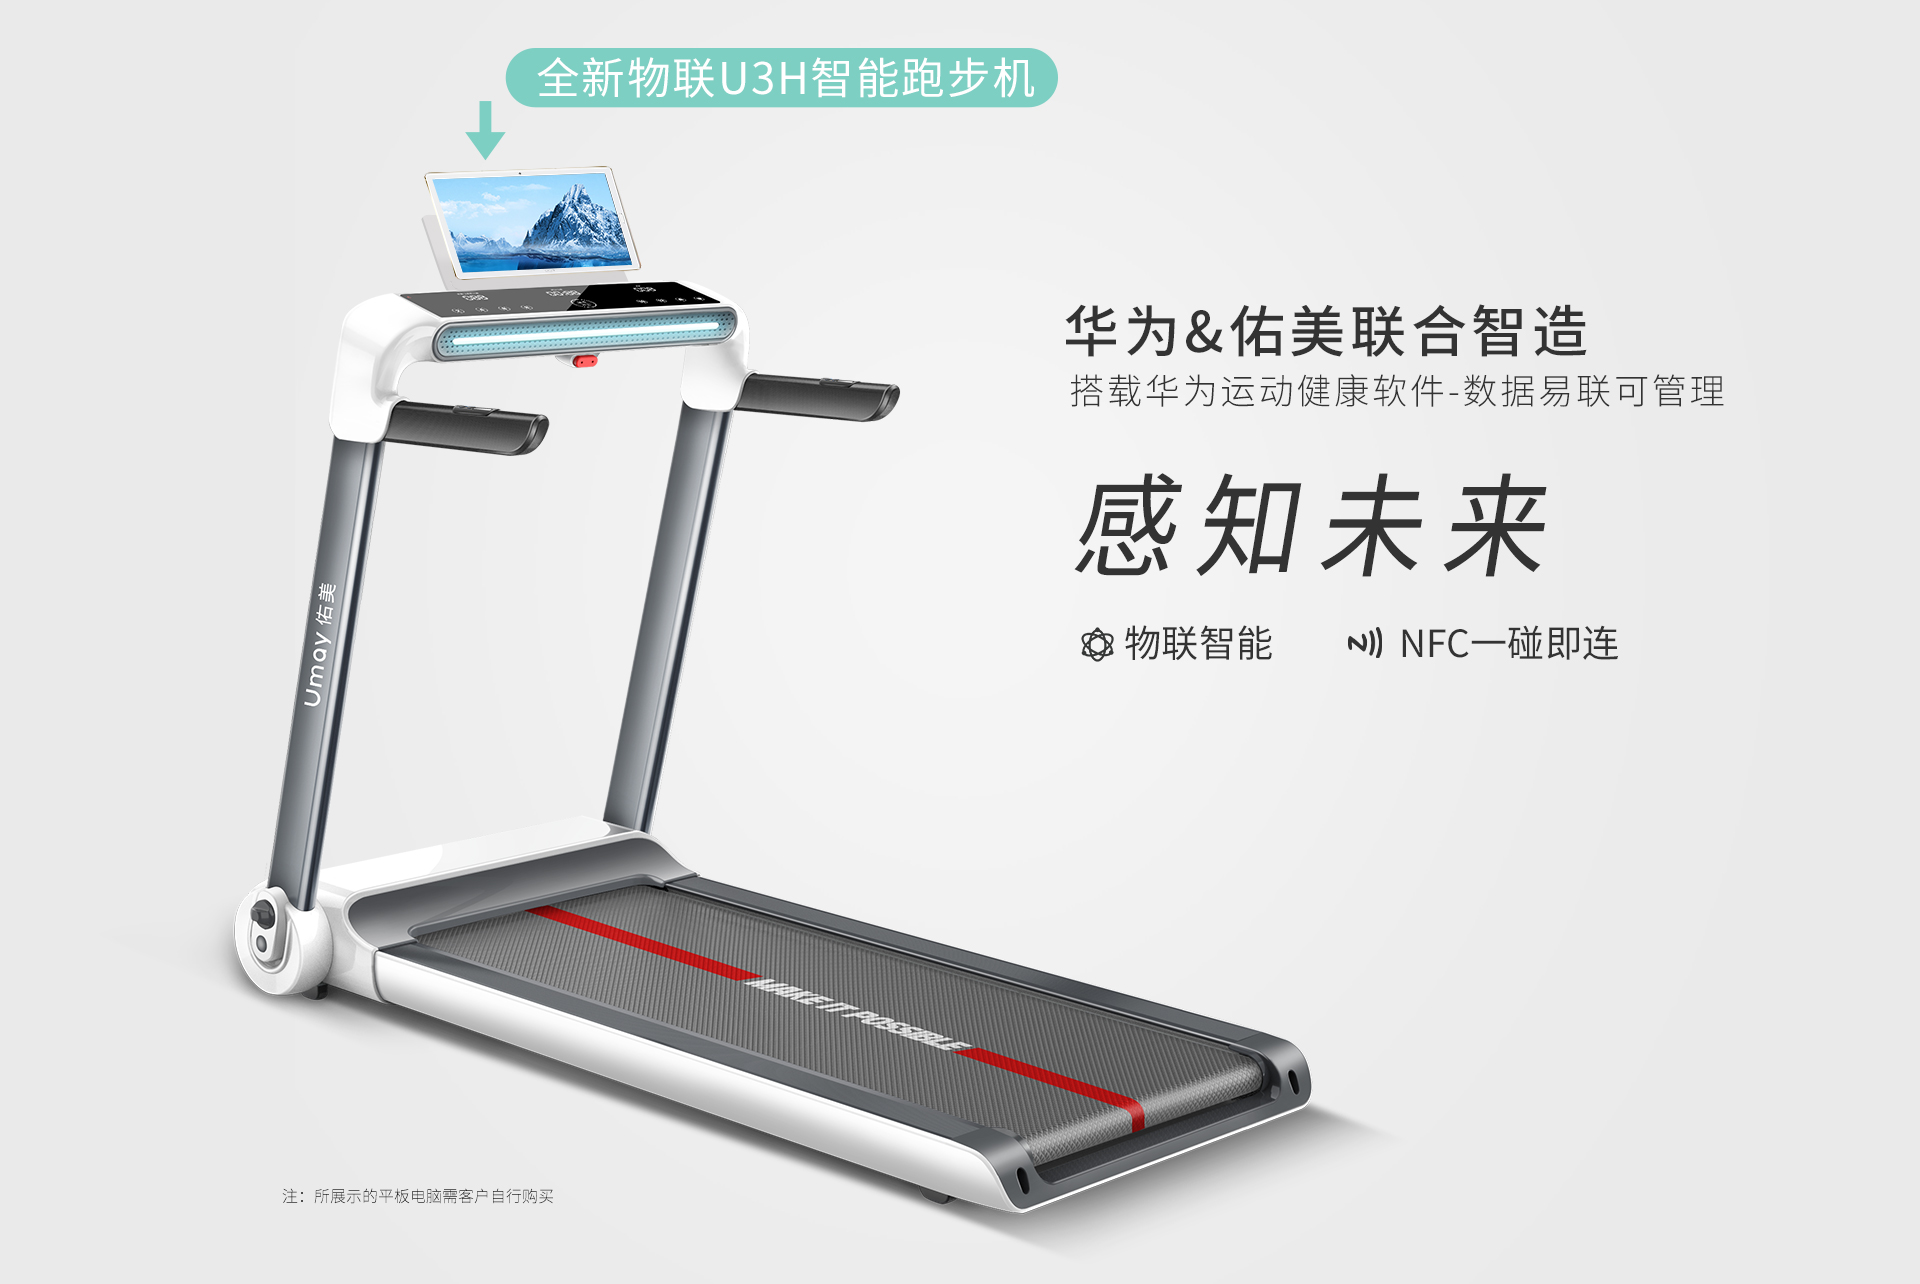 佑美 Umay 家用静音智能跑步机 支持华为运动健康app 价格 参数 图片 怎么样 华为商城